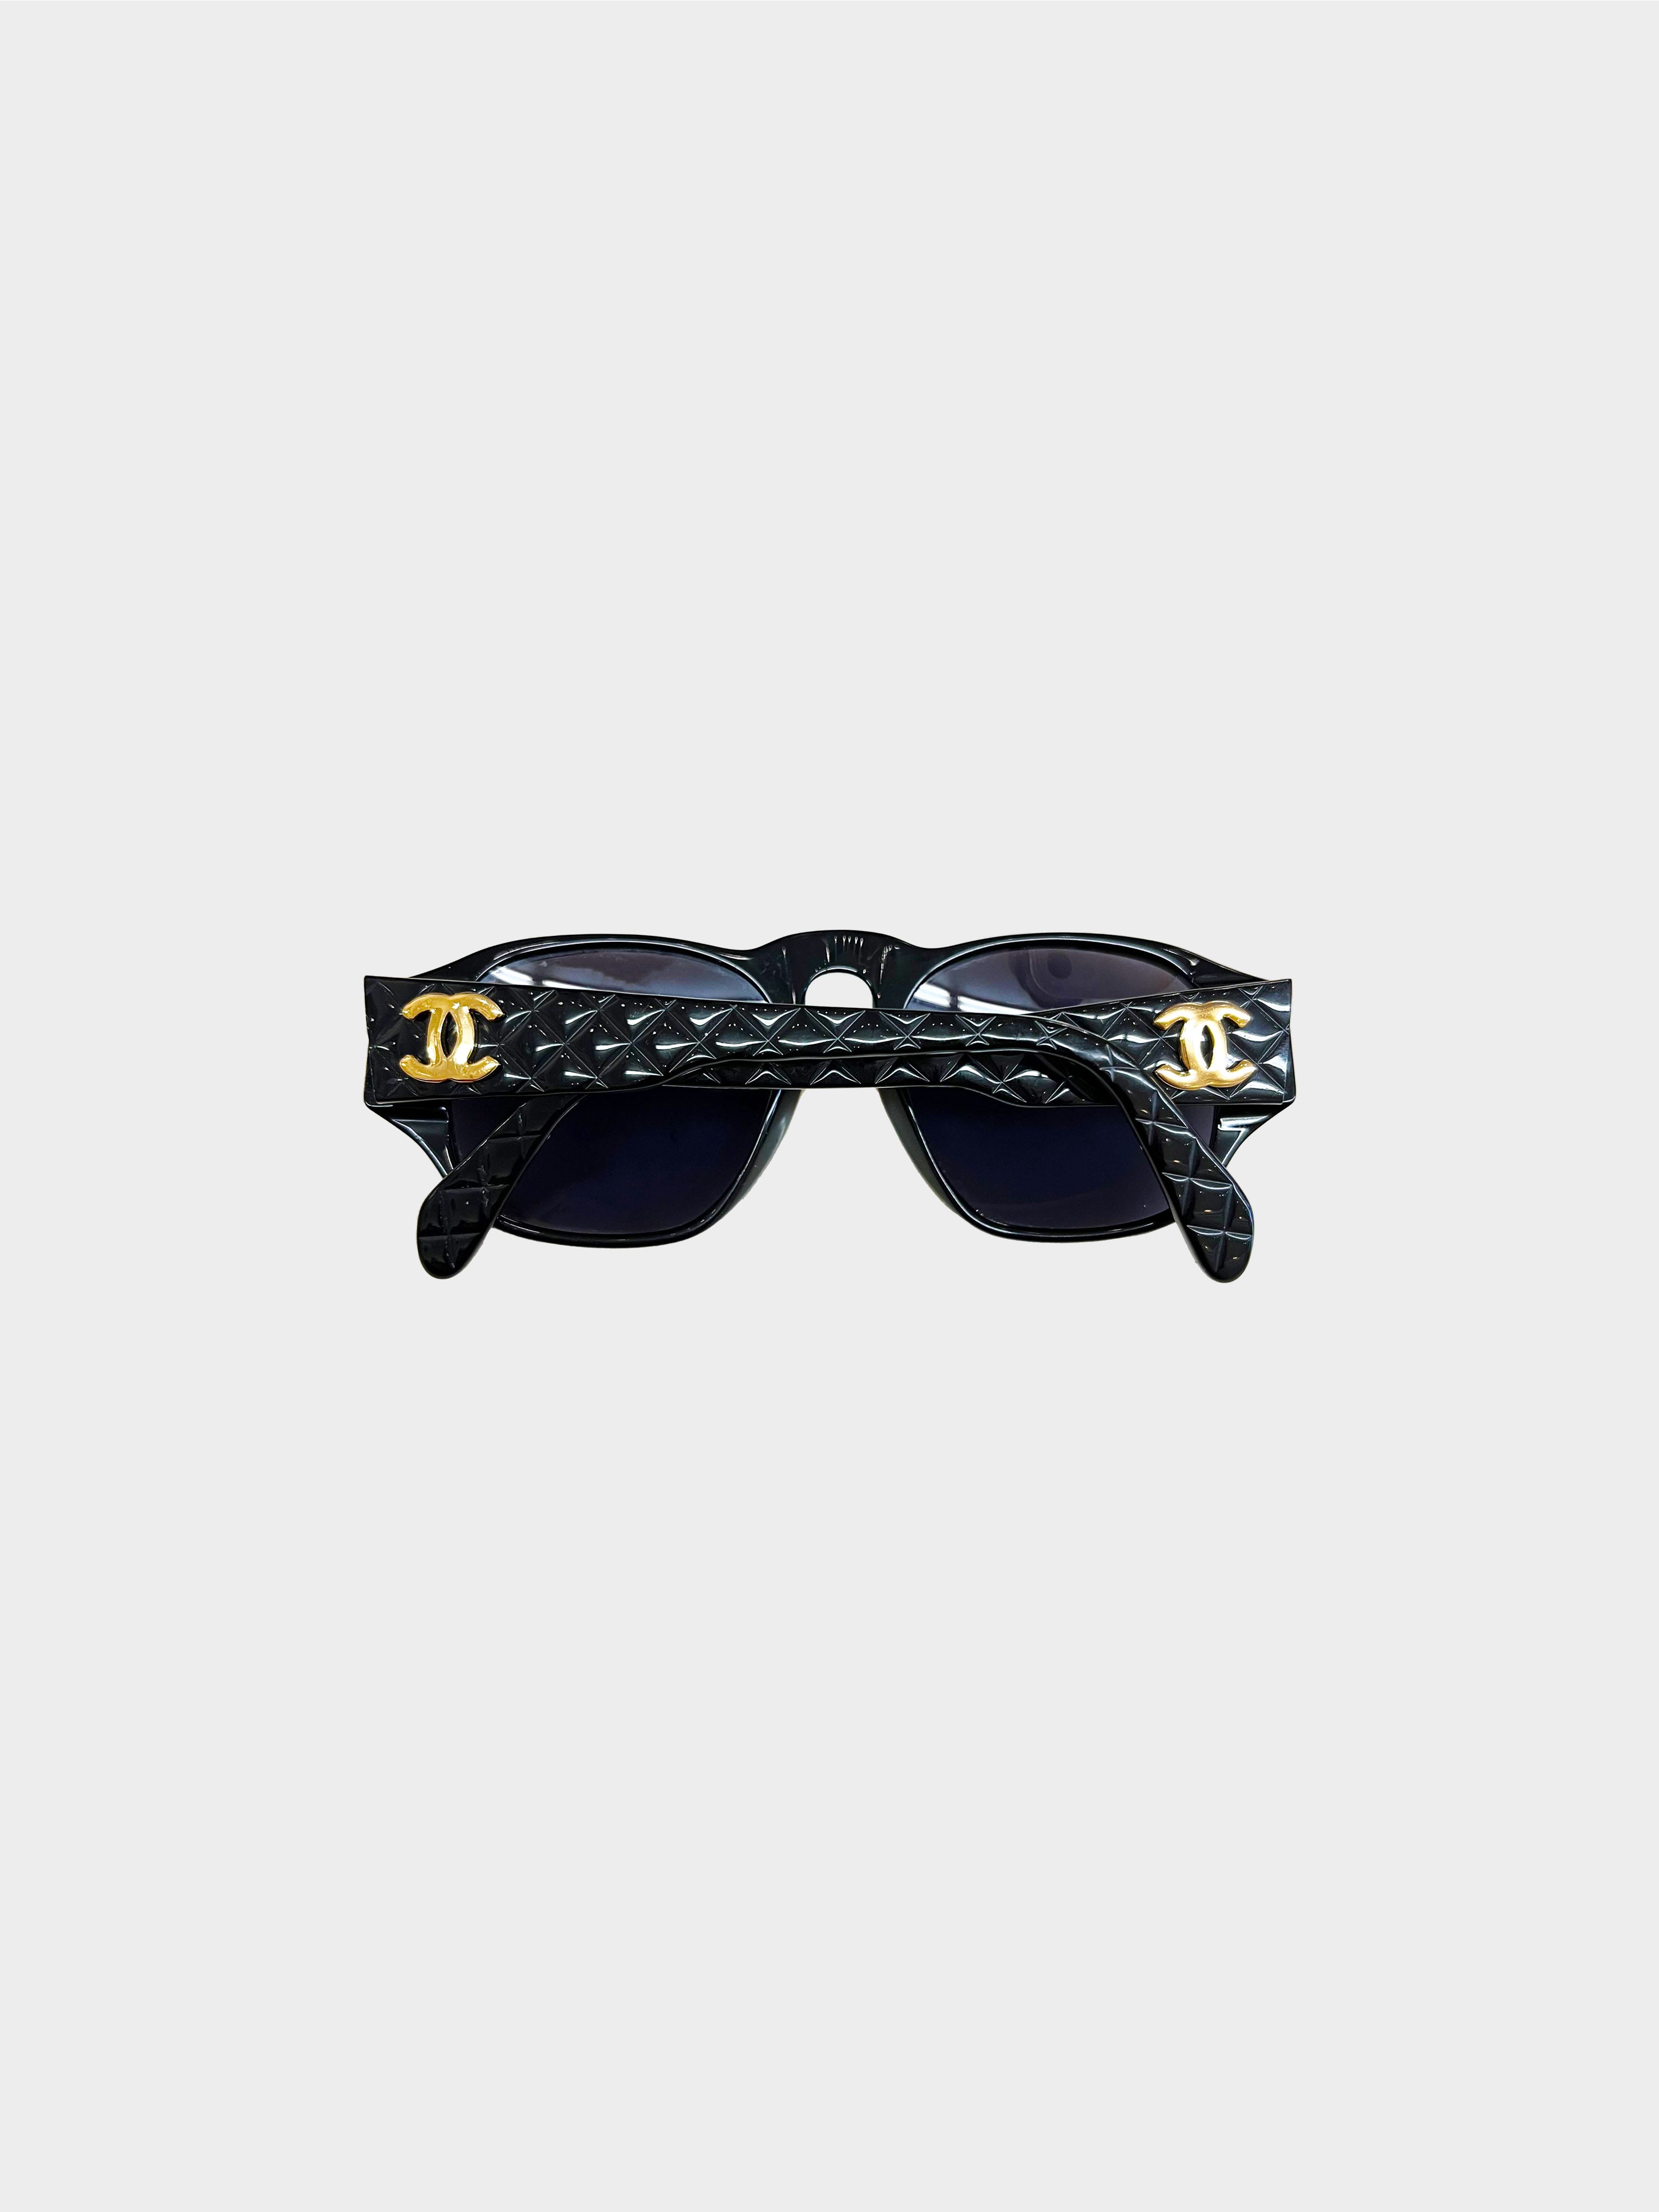 Chanel 1990s Black Retro Sunglasses · INTO